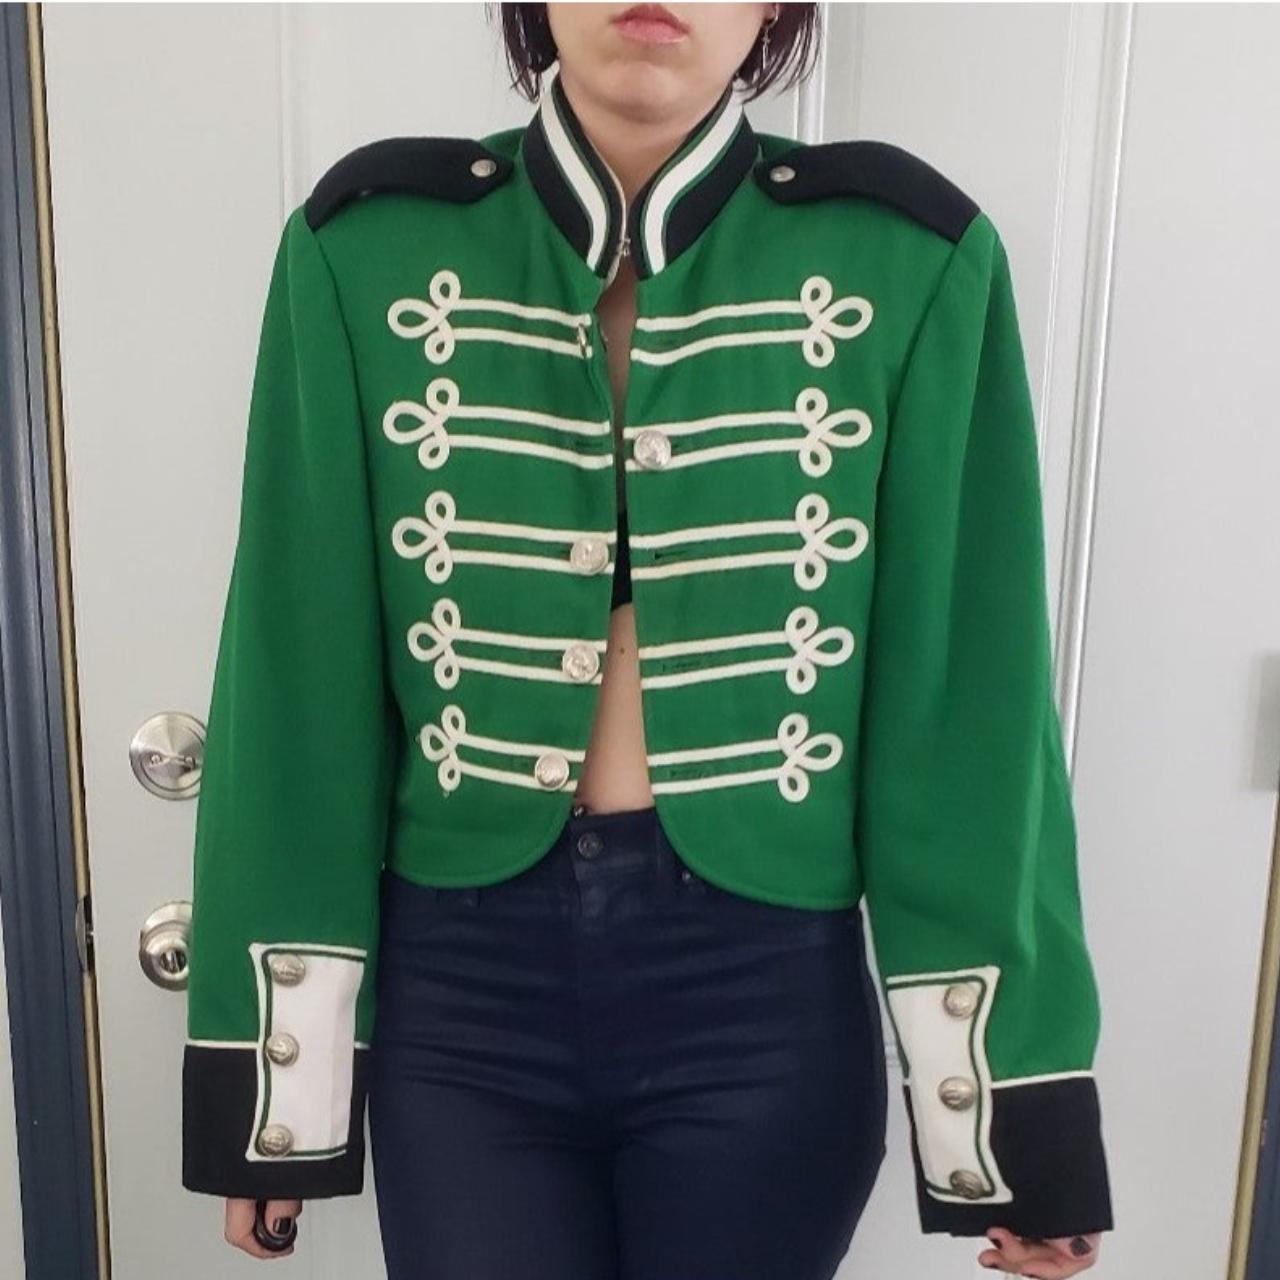 Vintage Green Band Uniform Jacket For my emo - Depop